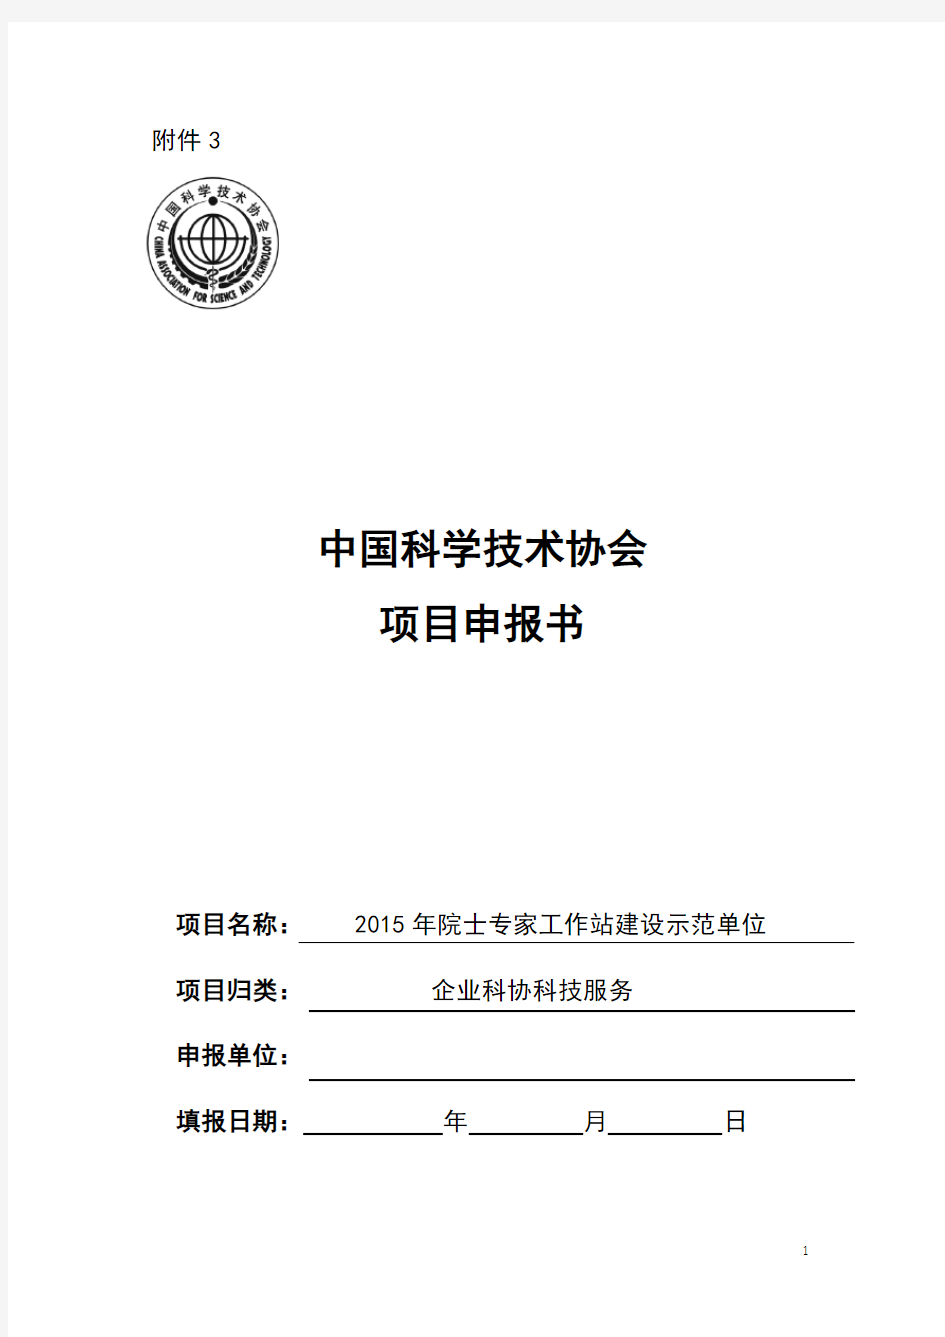 中国科学技术协会 项目申报书